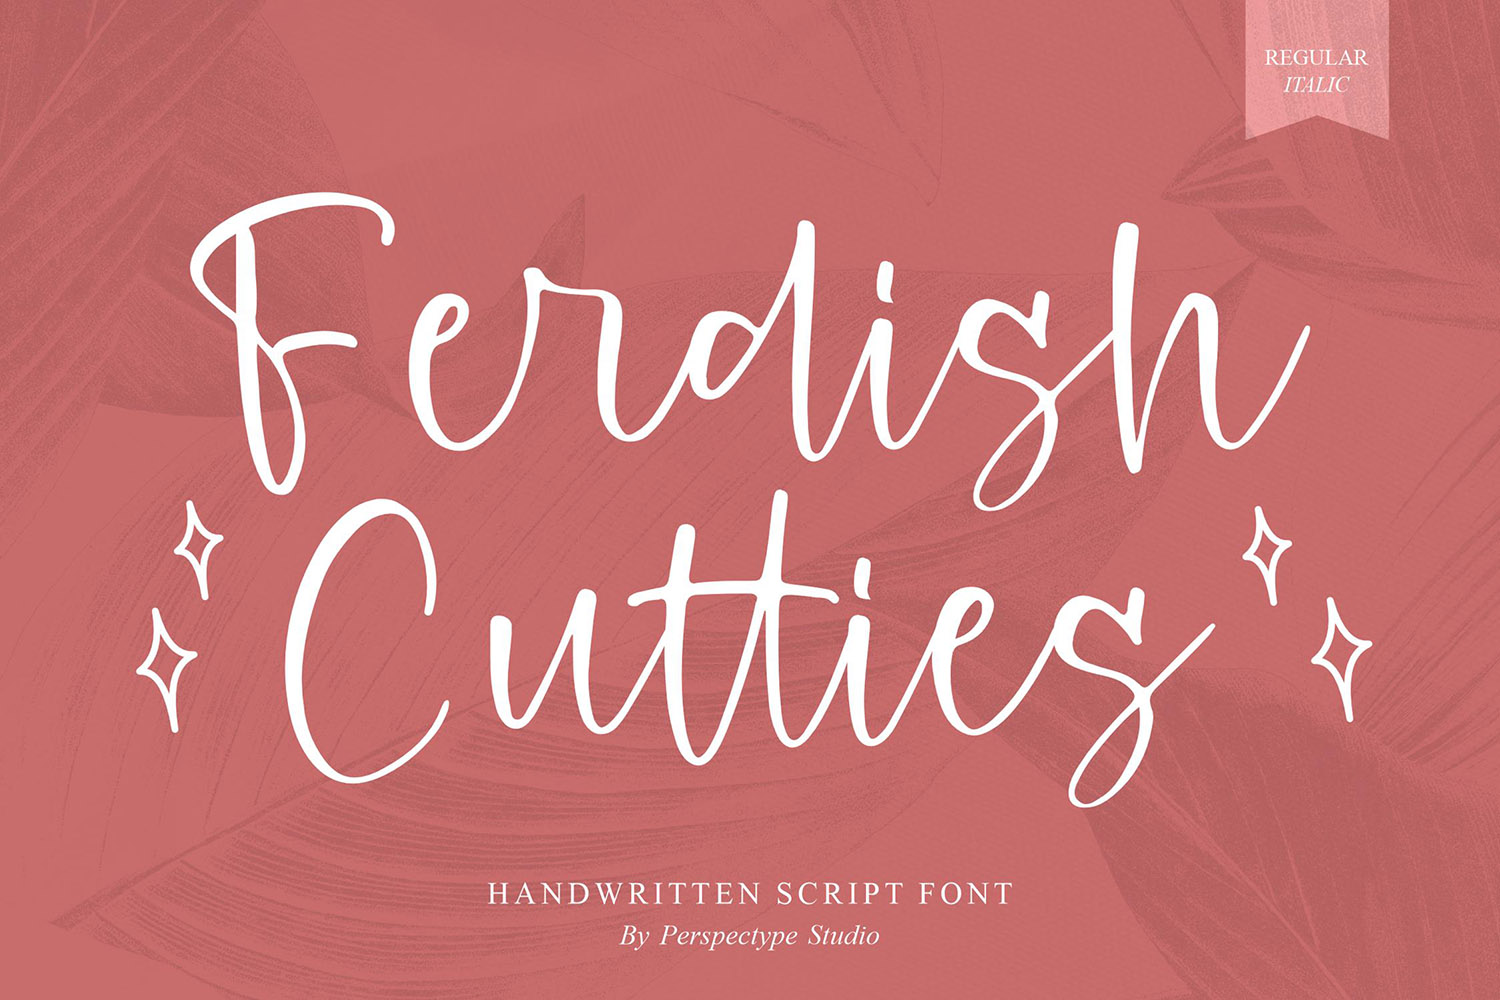 Ferdish Cutties Free Font